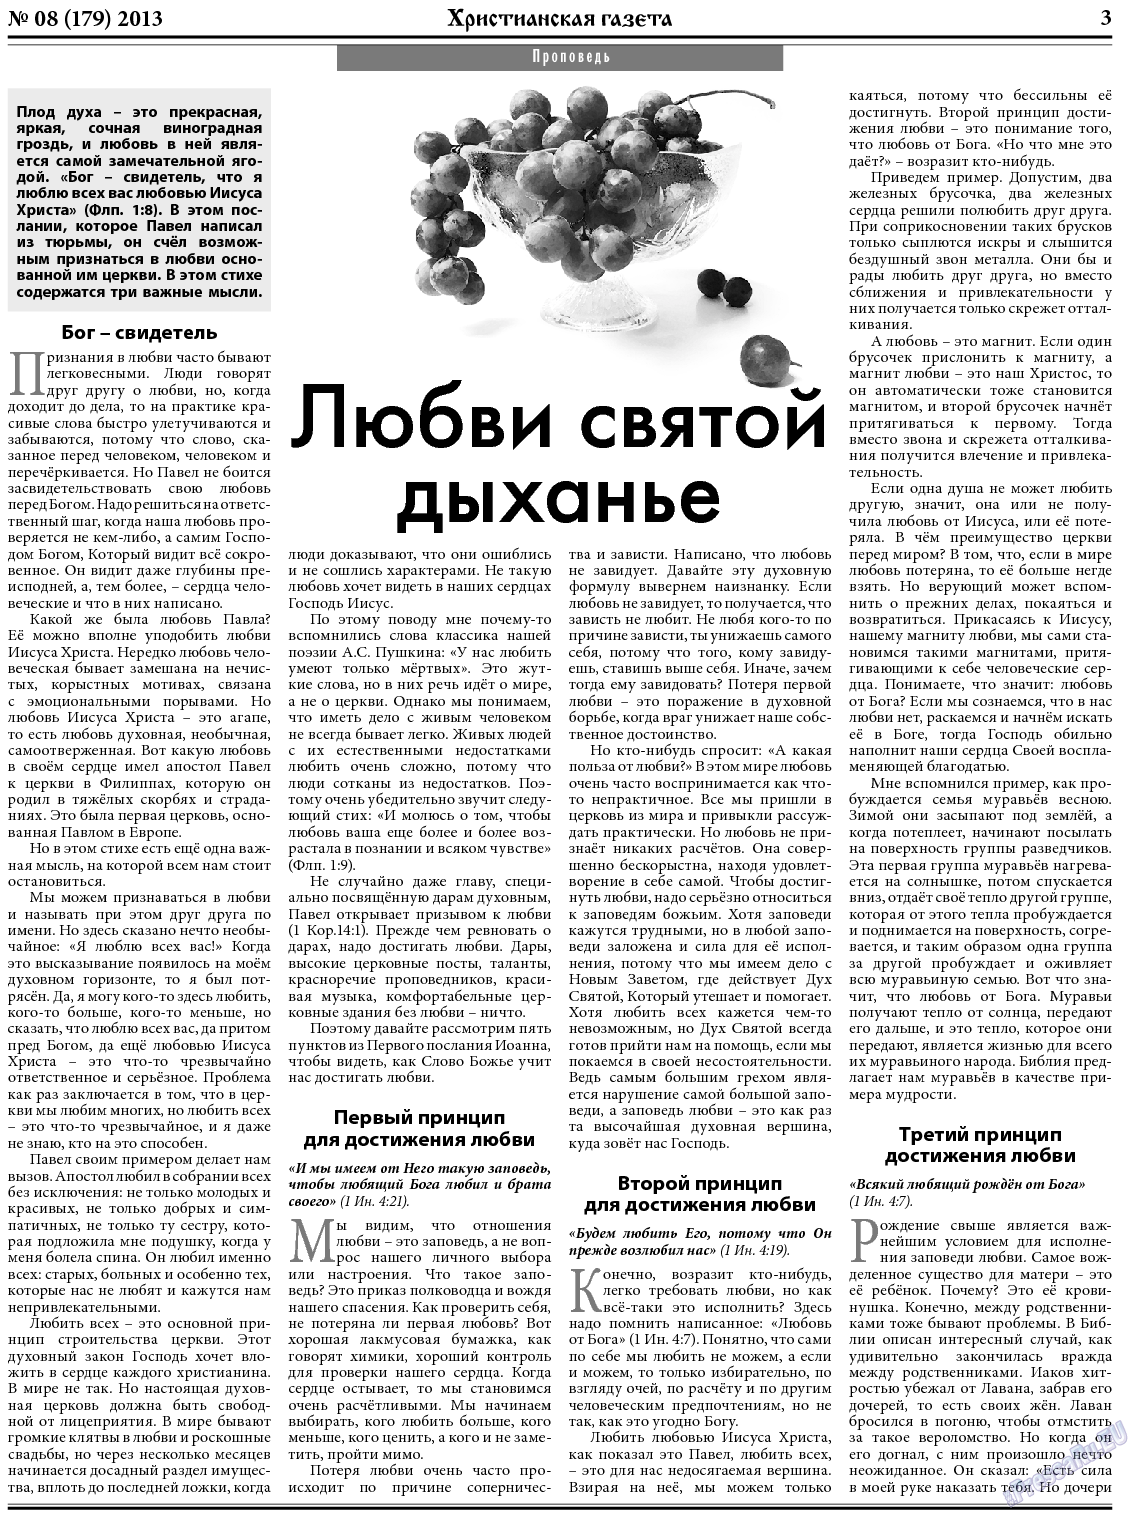 Христианская газета, газета. 2013 №8 стр.3